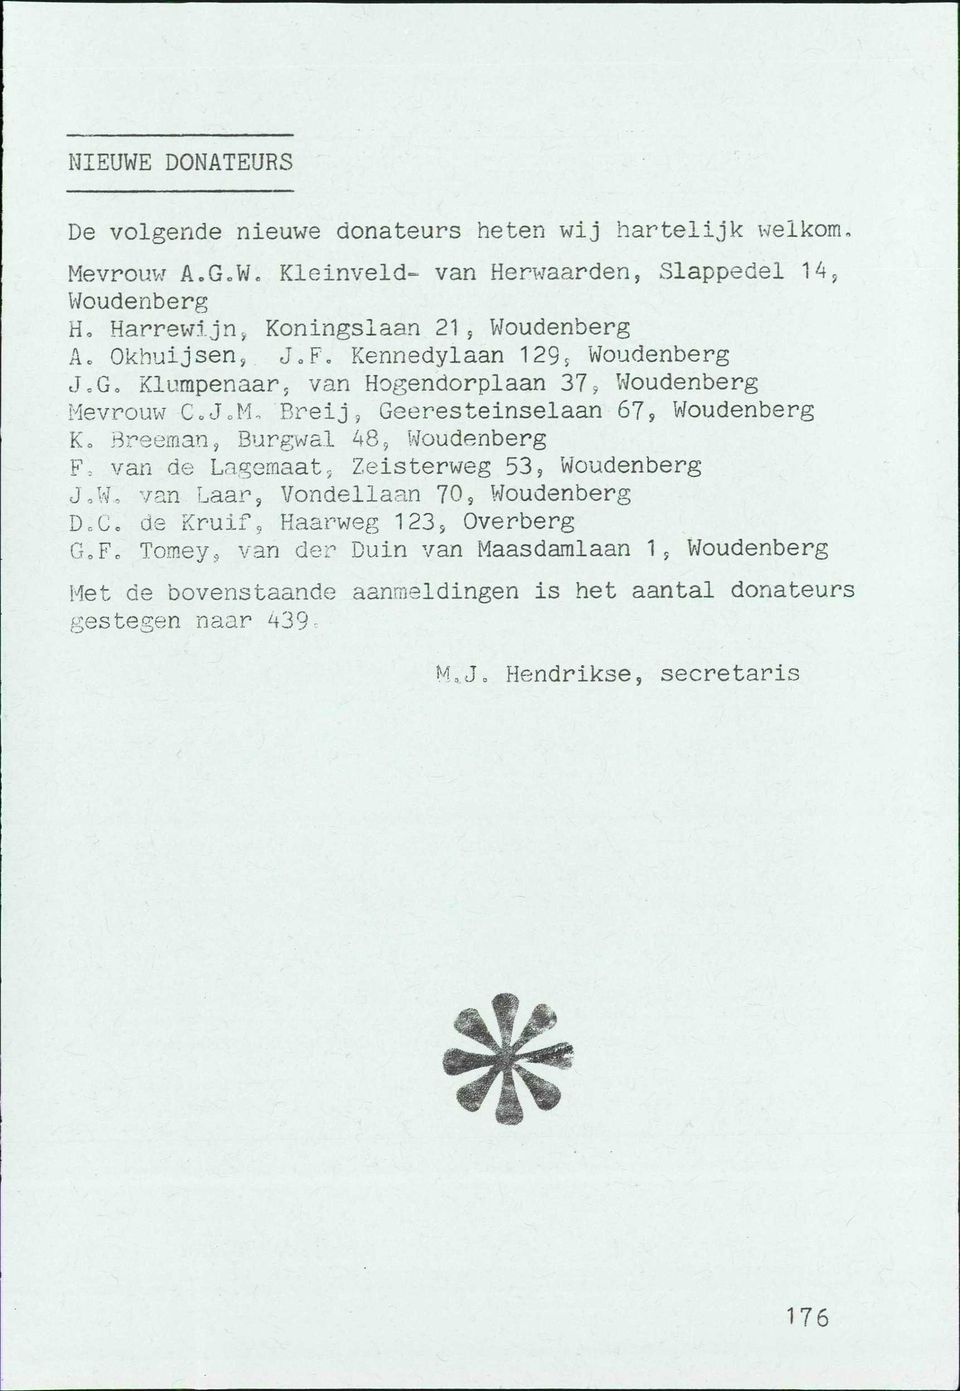 Breeman, Burgwal 48, Woudenberg F = van de Lagemaat, Zeisterweg 53, Woudenberg J,W, van Laar, Vondellaan 70, Woudenberg D.C. de Kruif, Haarweg 123, Overberg G.F. Tomey, van der Duin van Maasdamlaan 1, Woudenberg Met de bovenstaande aanmeldingen is het aantal donateurs gestegen naar 439.